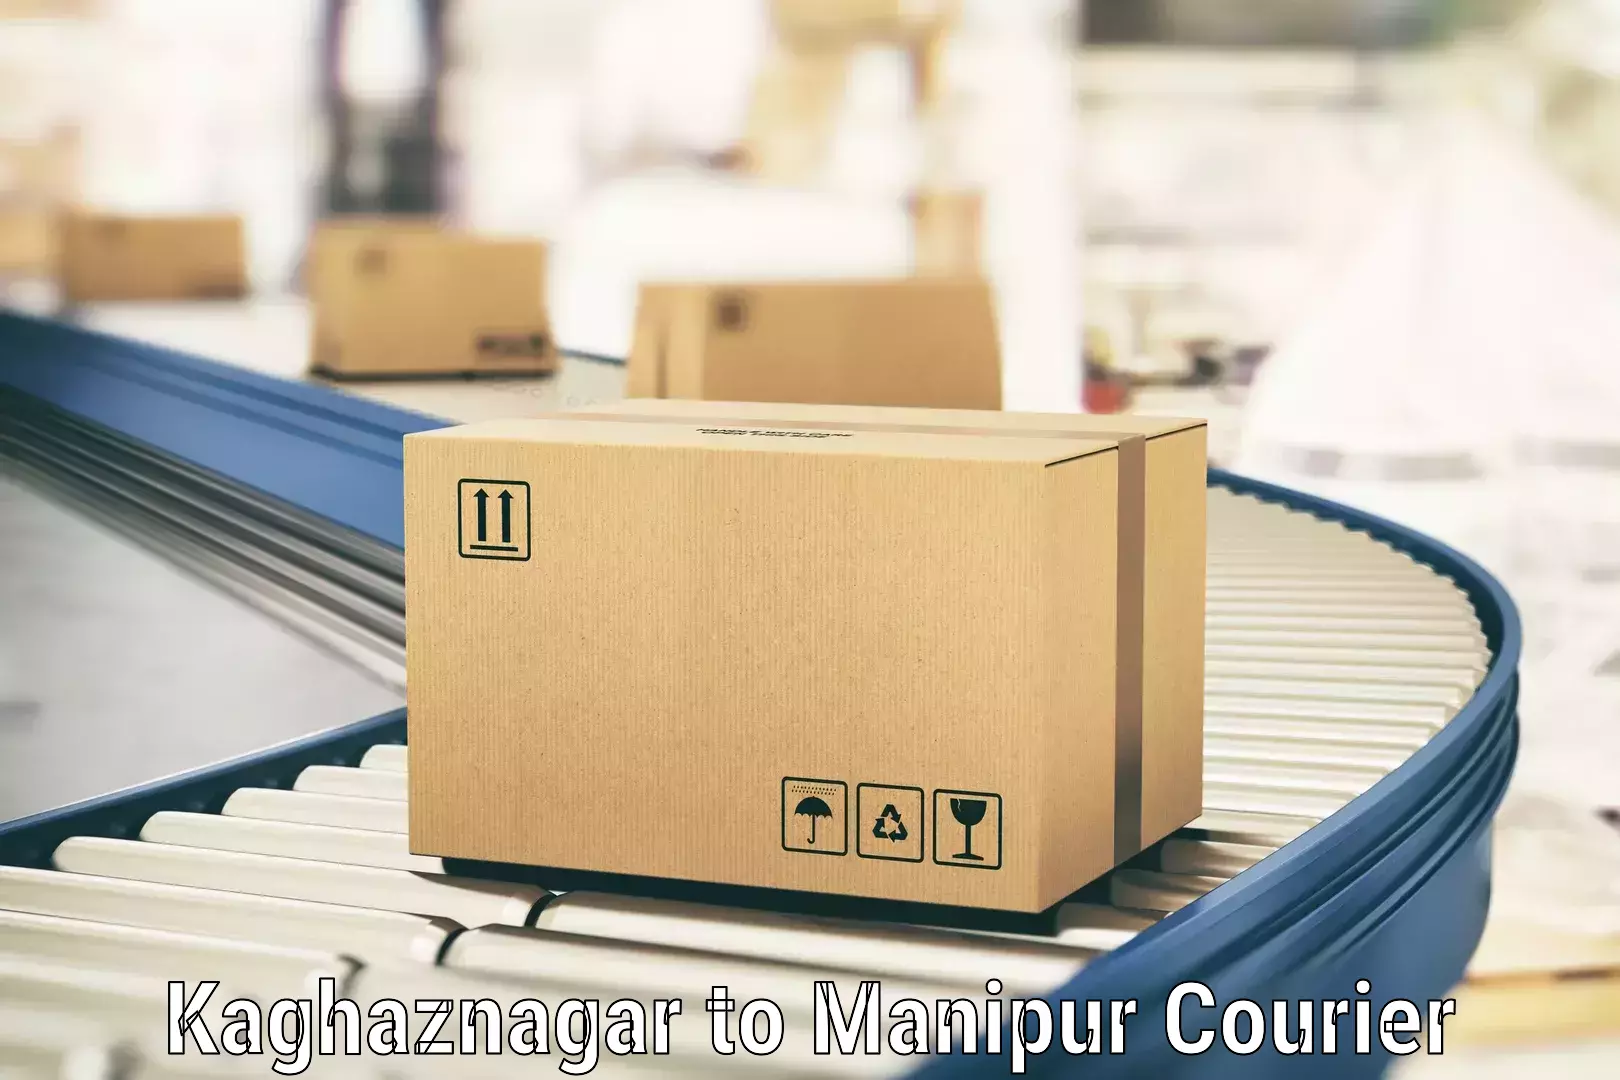 Comprehensive parcel tracking Kaghaznagar to NIT Manipur